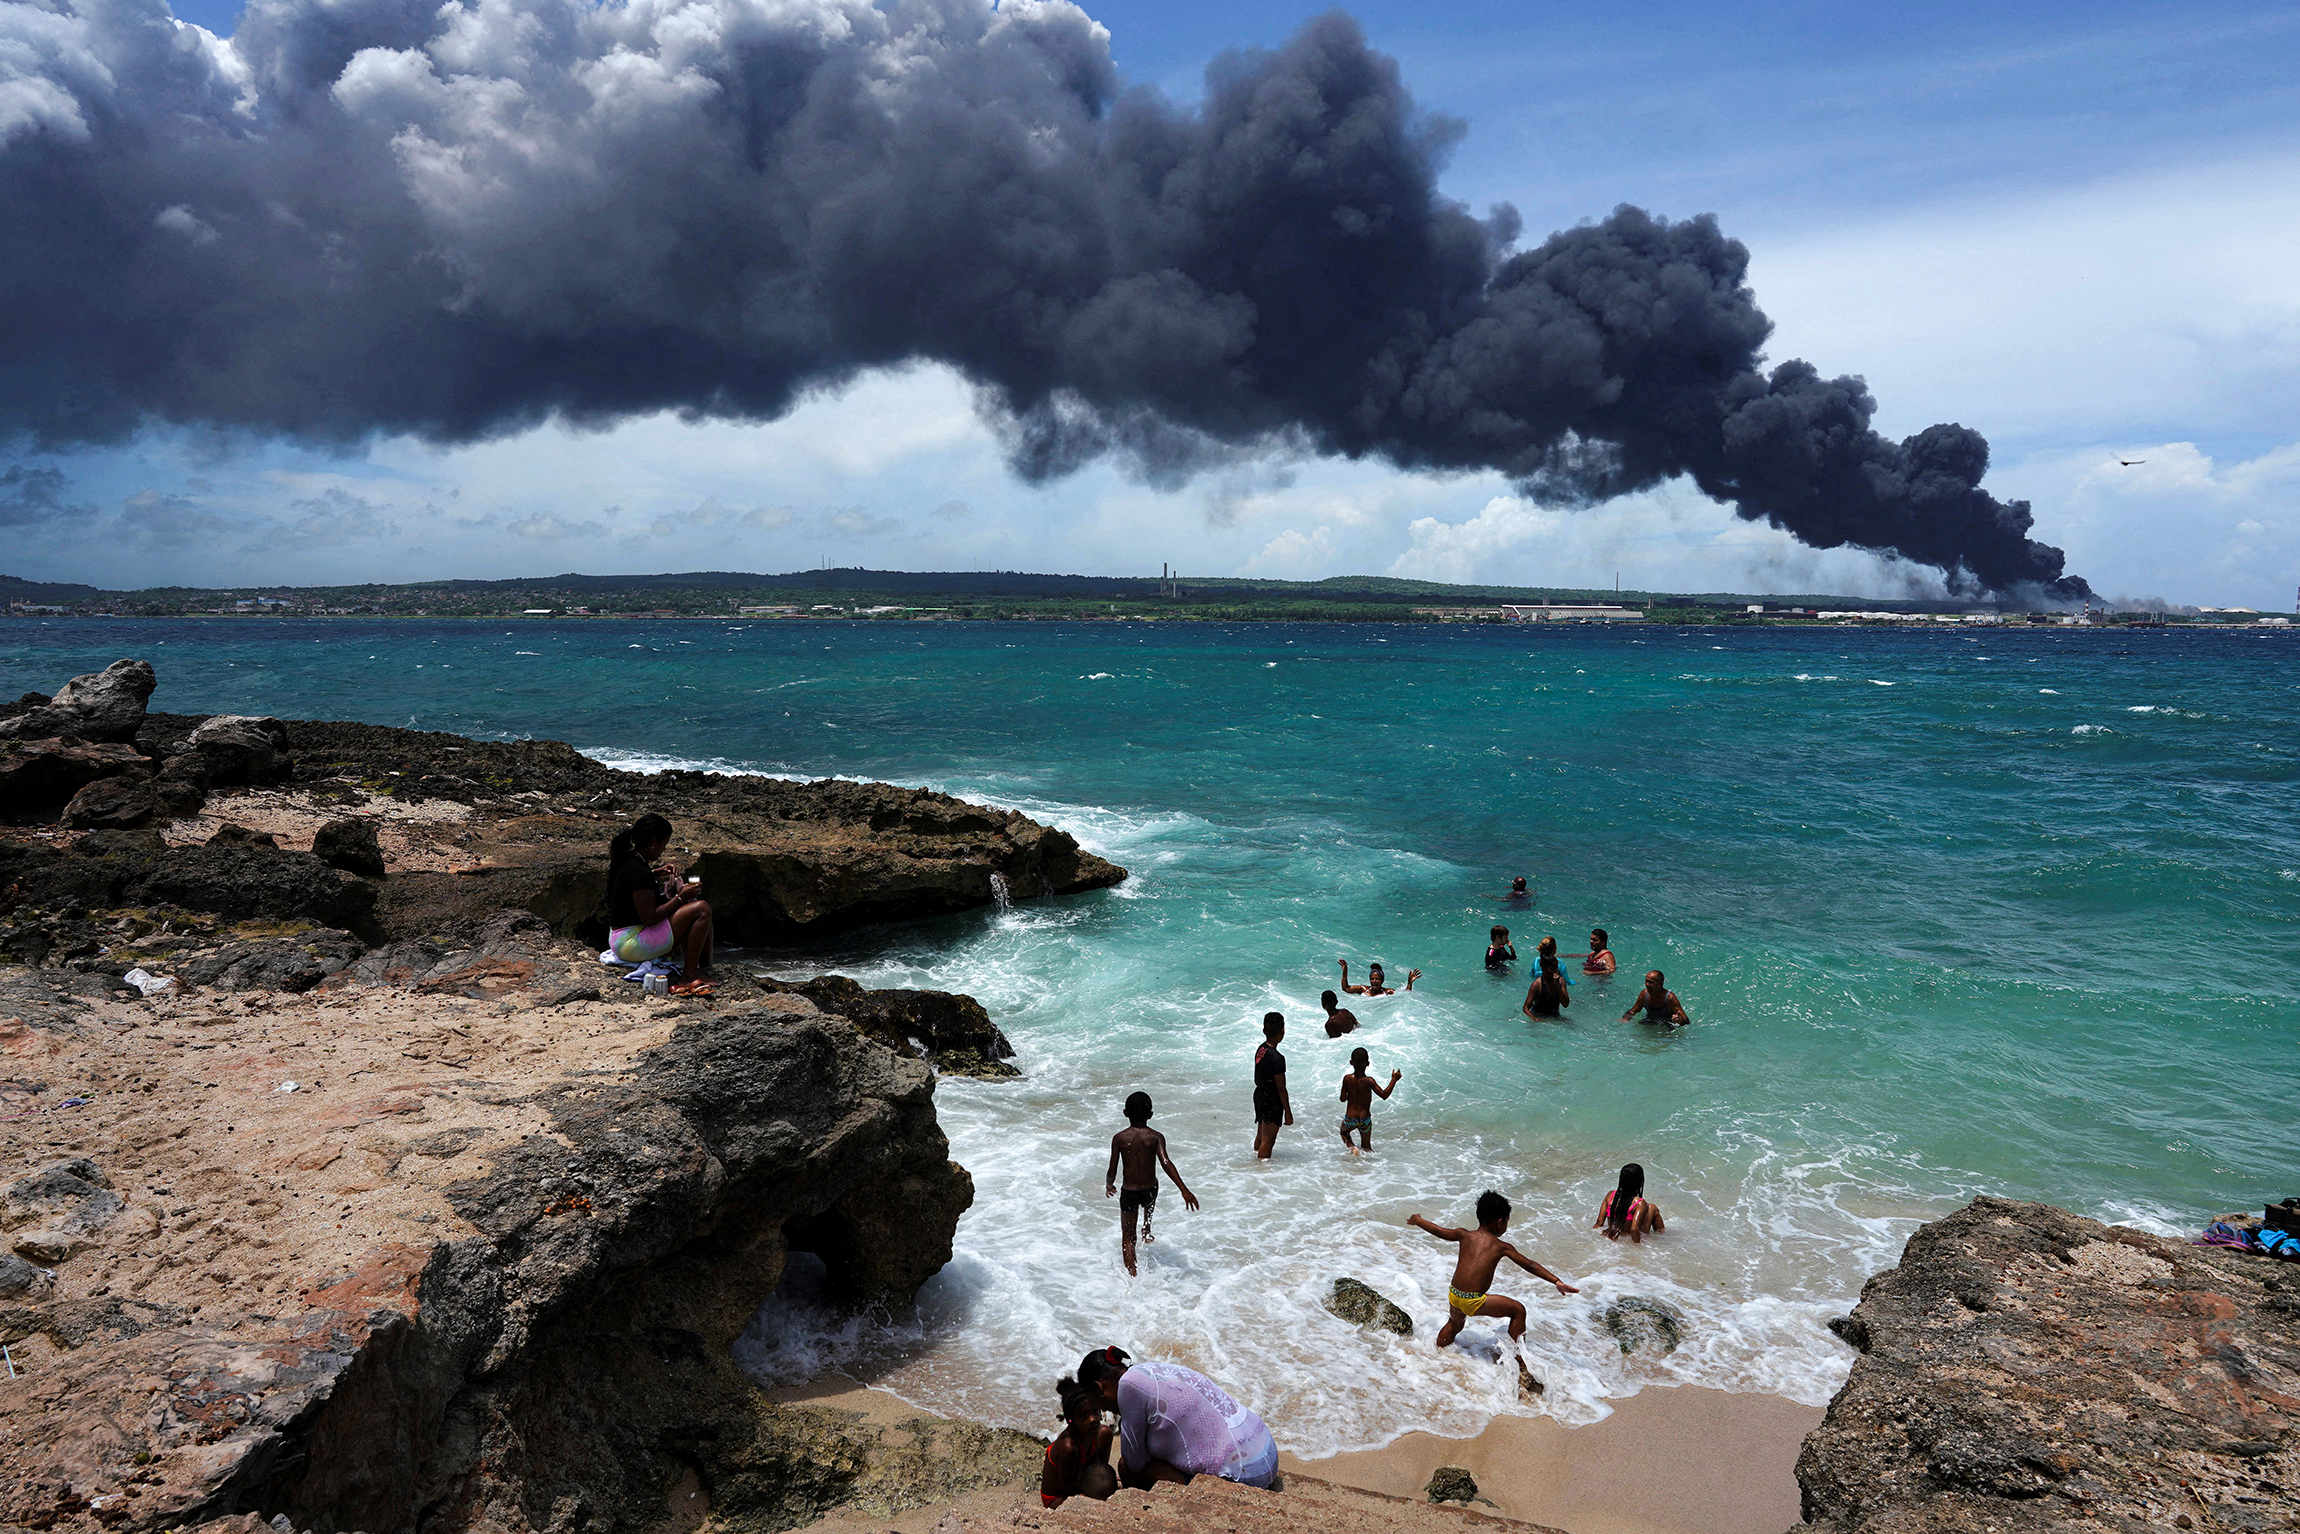 На фото: вид с пляжа, 6 августа 2022 года

В результате пожара в Матансасе&nbsp;минимум один человек погиб, 14 пропали без вести и 125 получили ранения.&nbsp;Власти эвакуировали более 4,9 тыс. человек, сообщает NPR